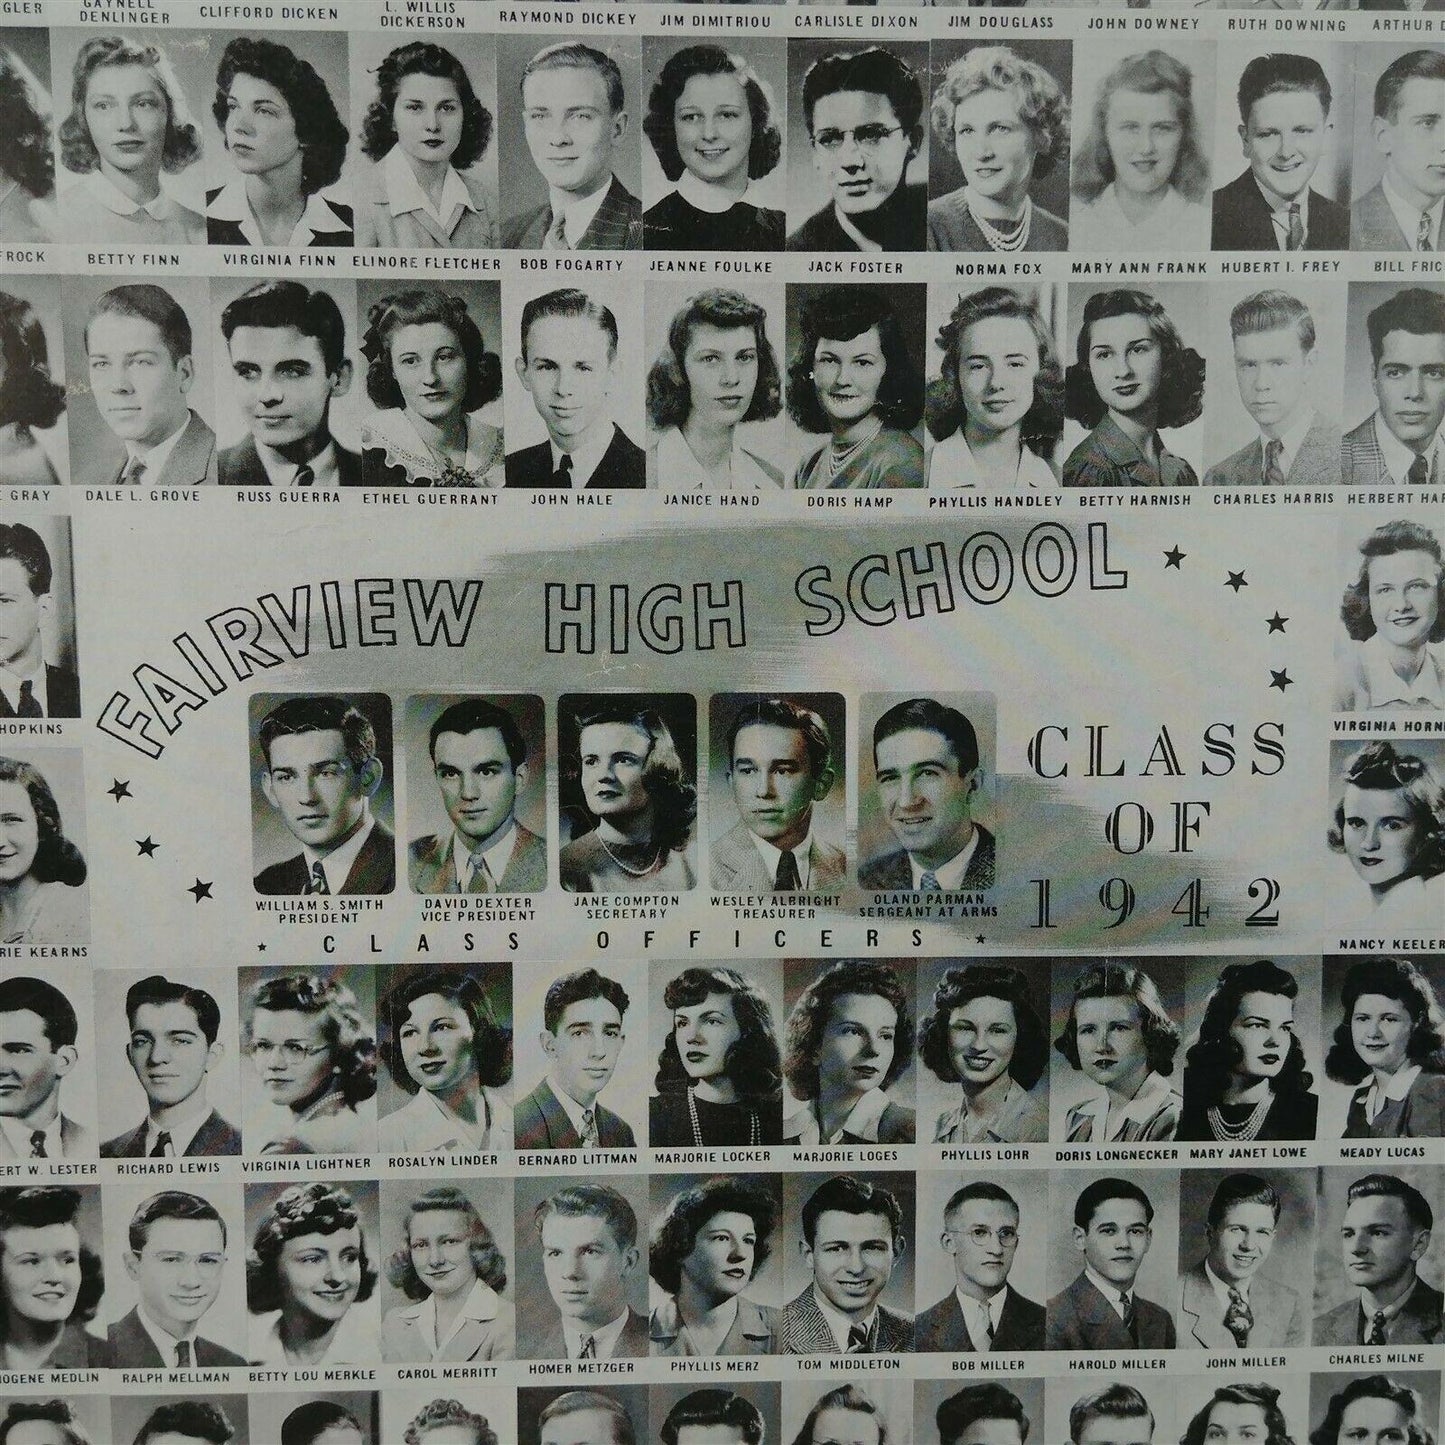 1942 Fairview High School Class Photo 26" x 19.25"